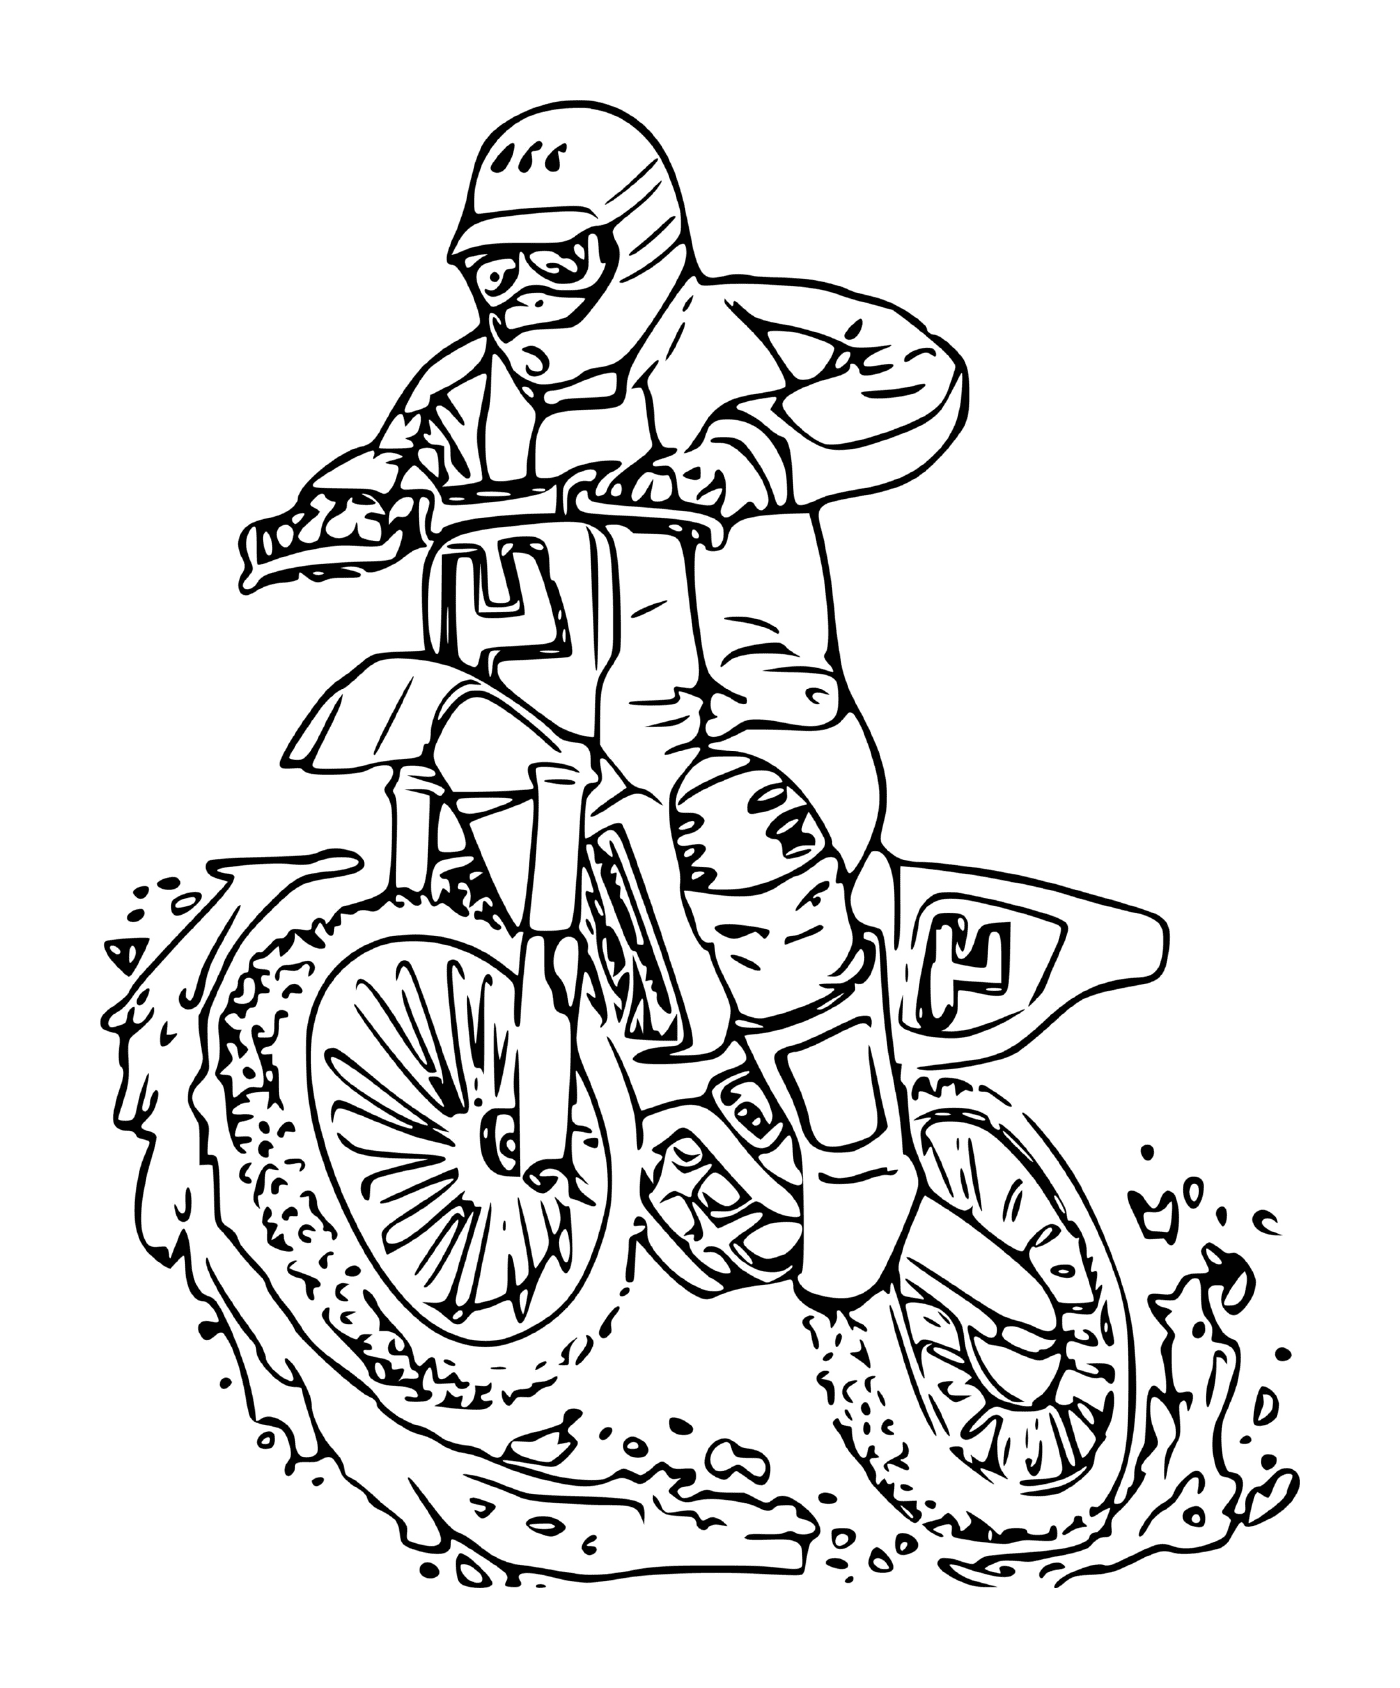   homme sur moto cross 